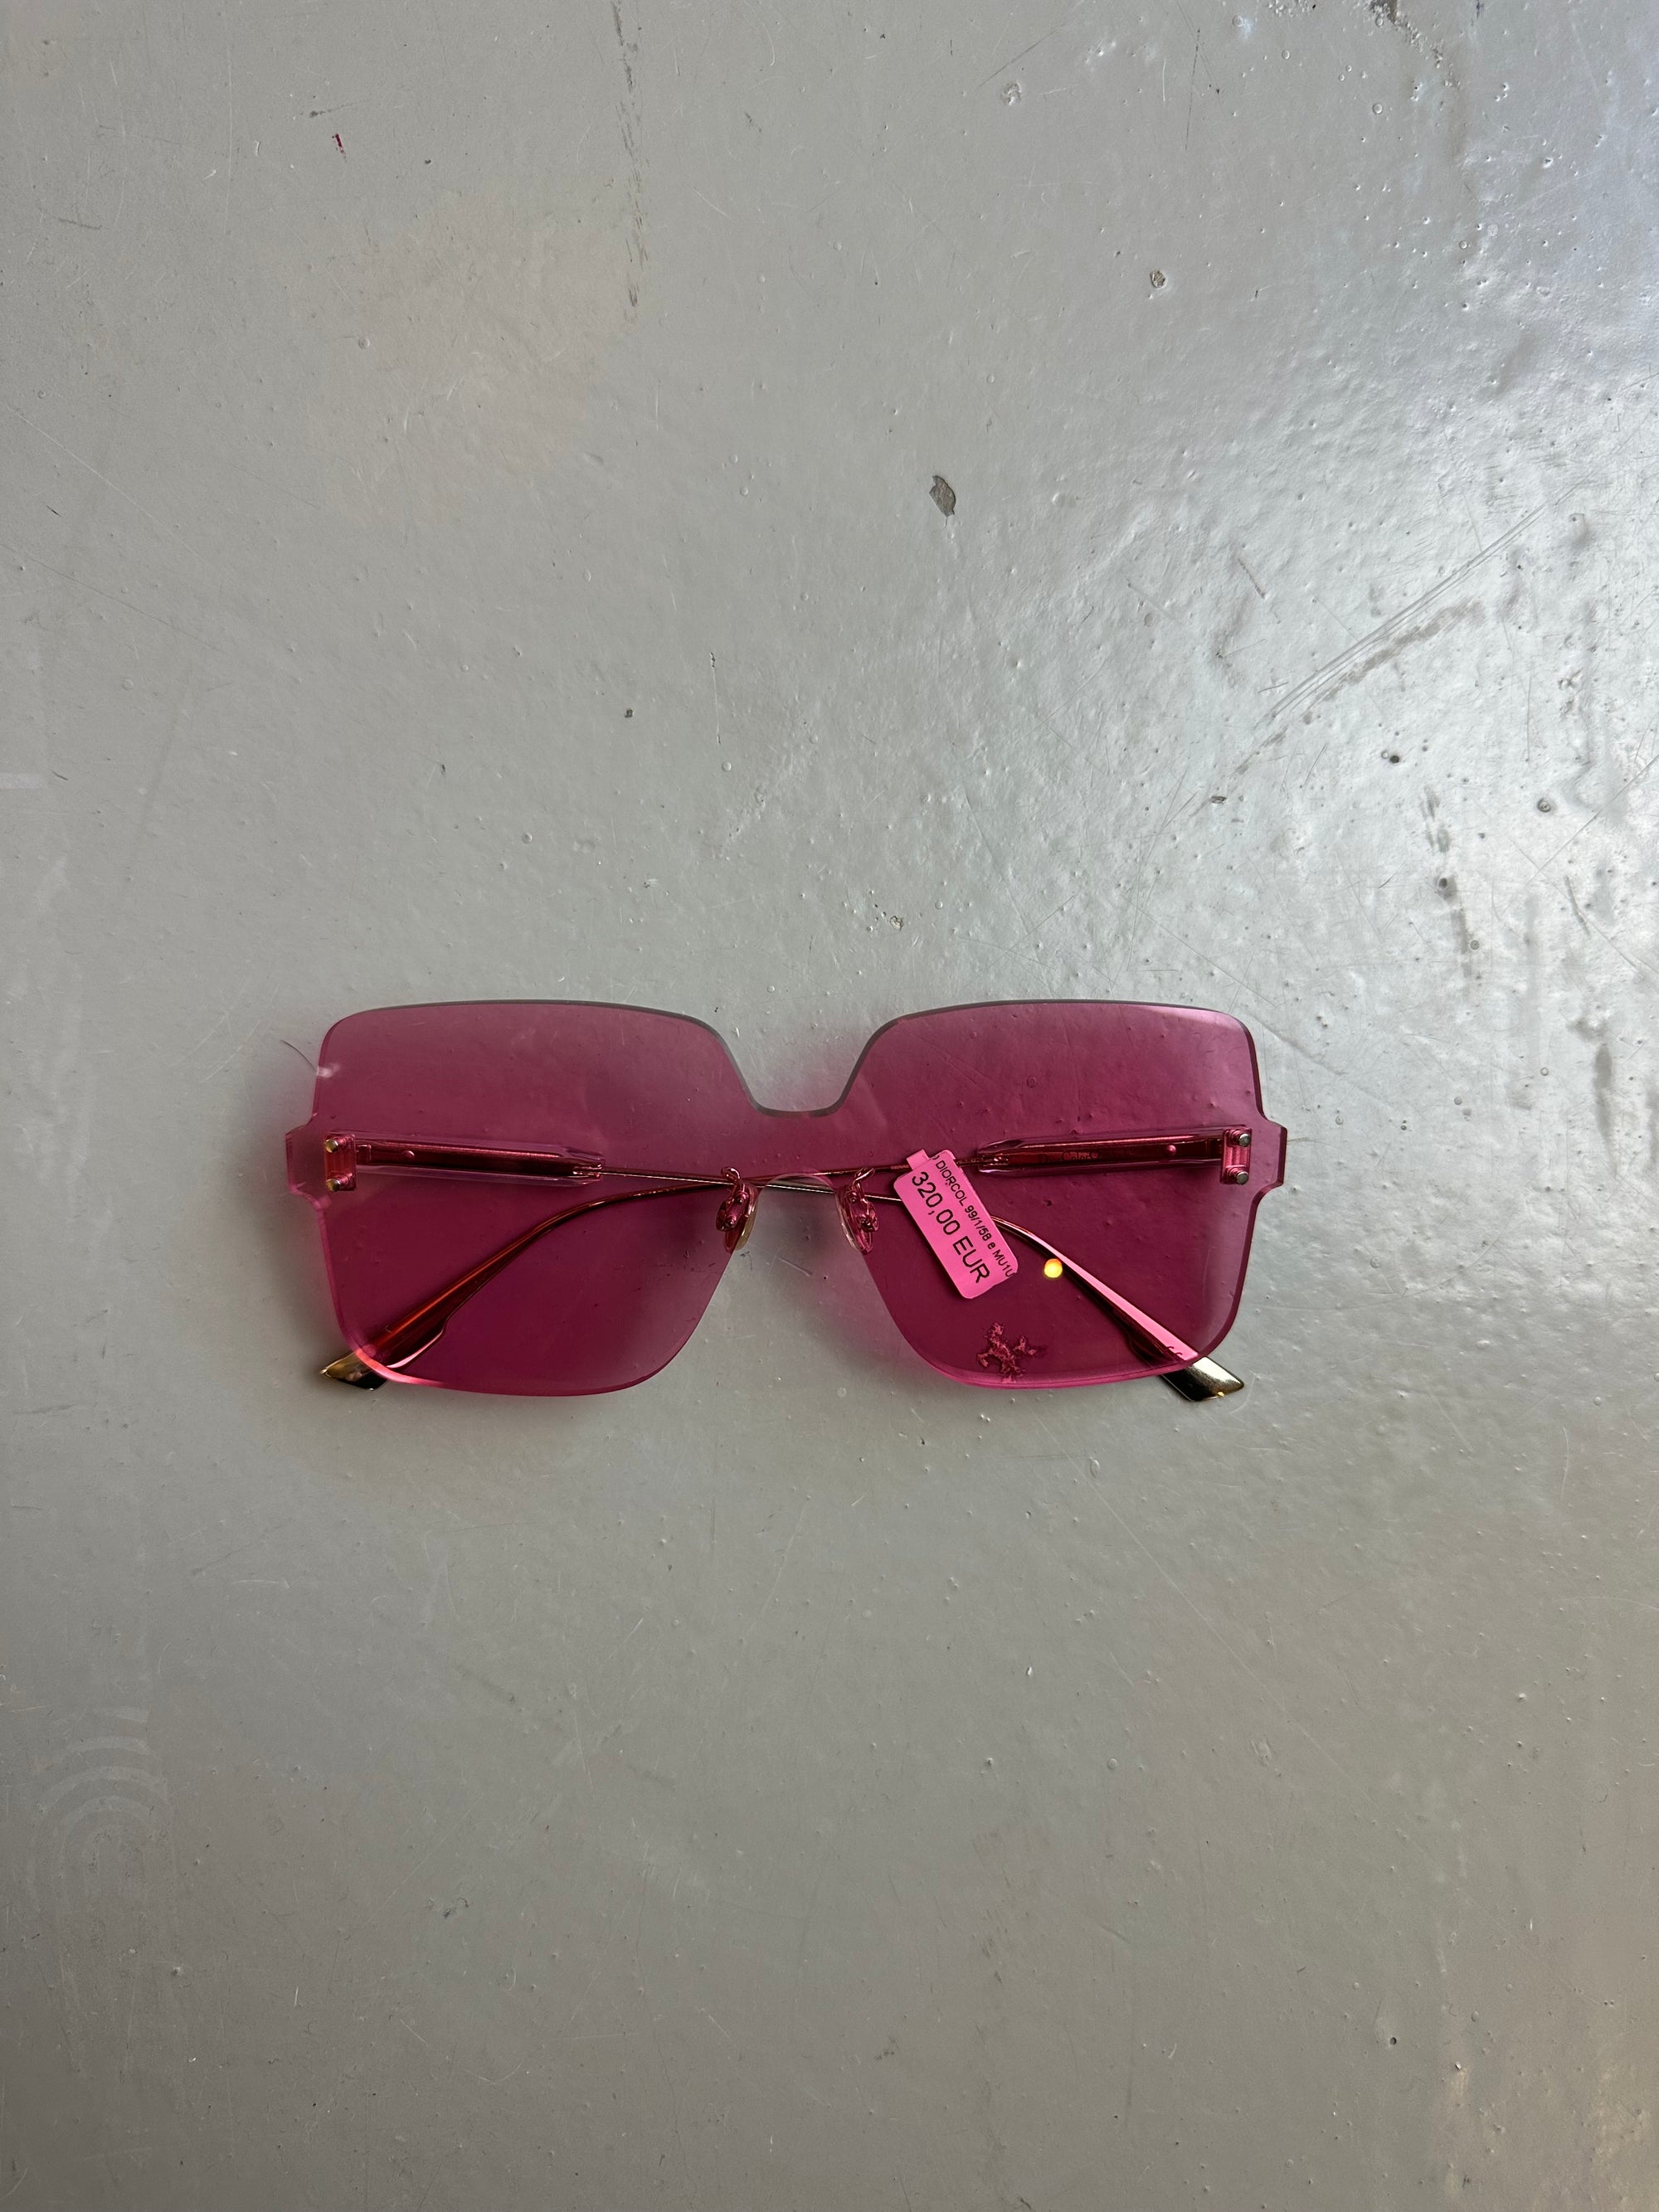 Produktbild von einer pinken Christian Dior Sonnenbrille ohne Rahmen vor grauem Hintergrund.